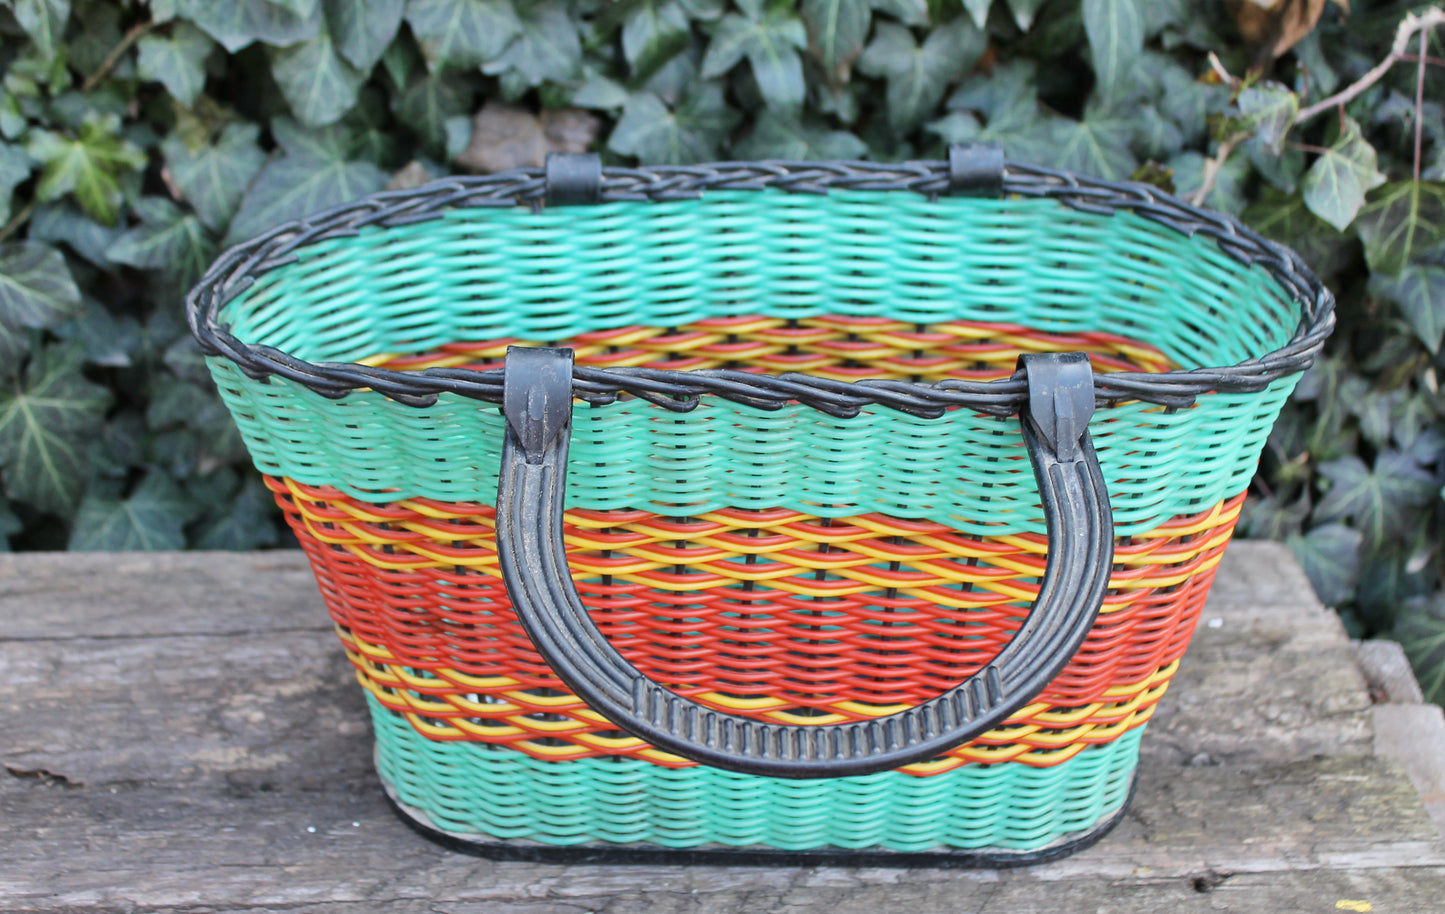 Vintage basket -Go shopping - Made in USSR - Vintage home bag - Plastic basket - Picnic basket - reusable bag - 1970s